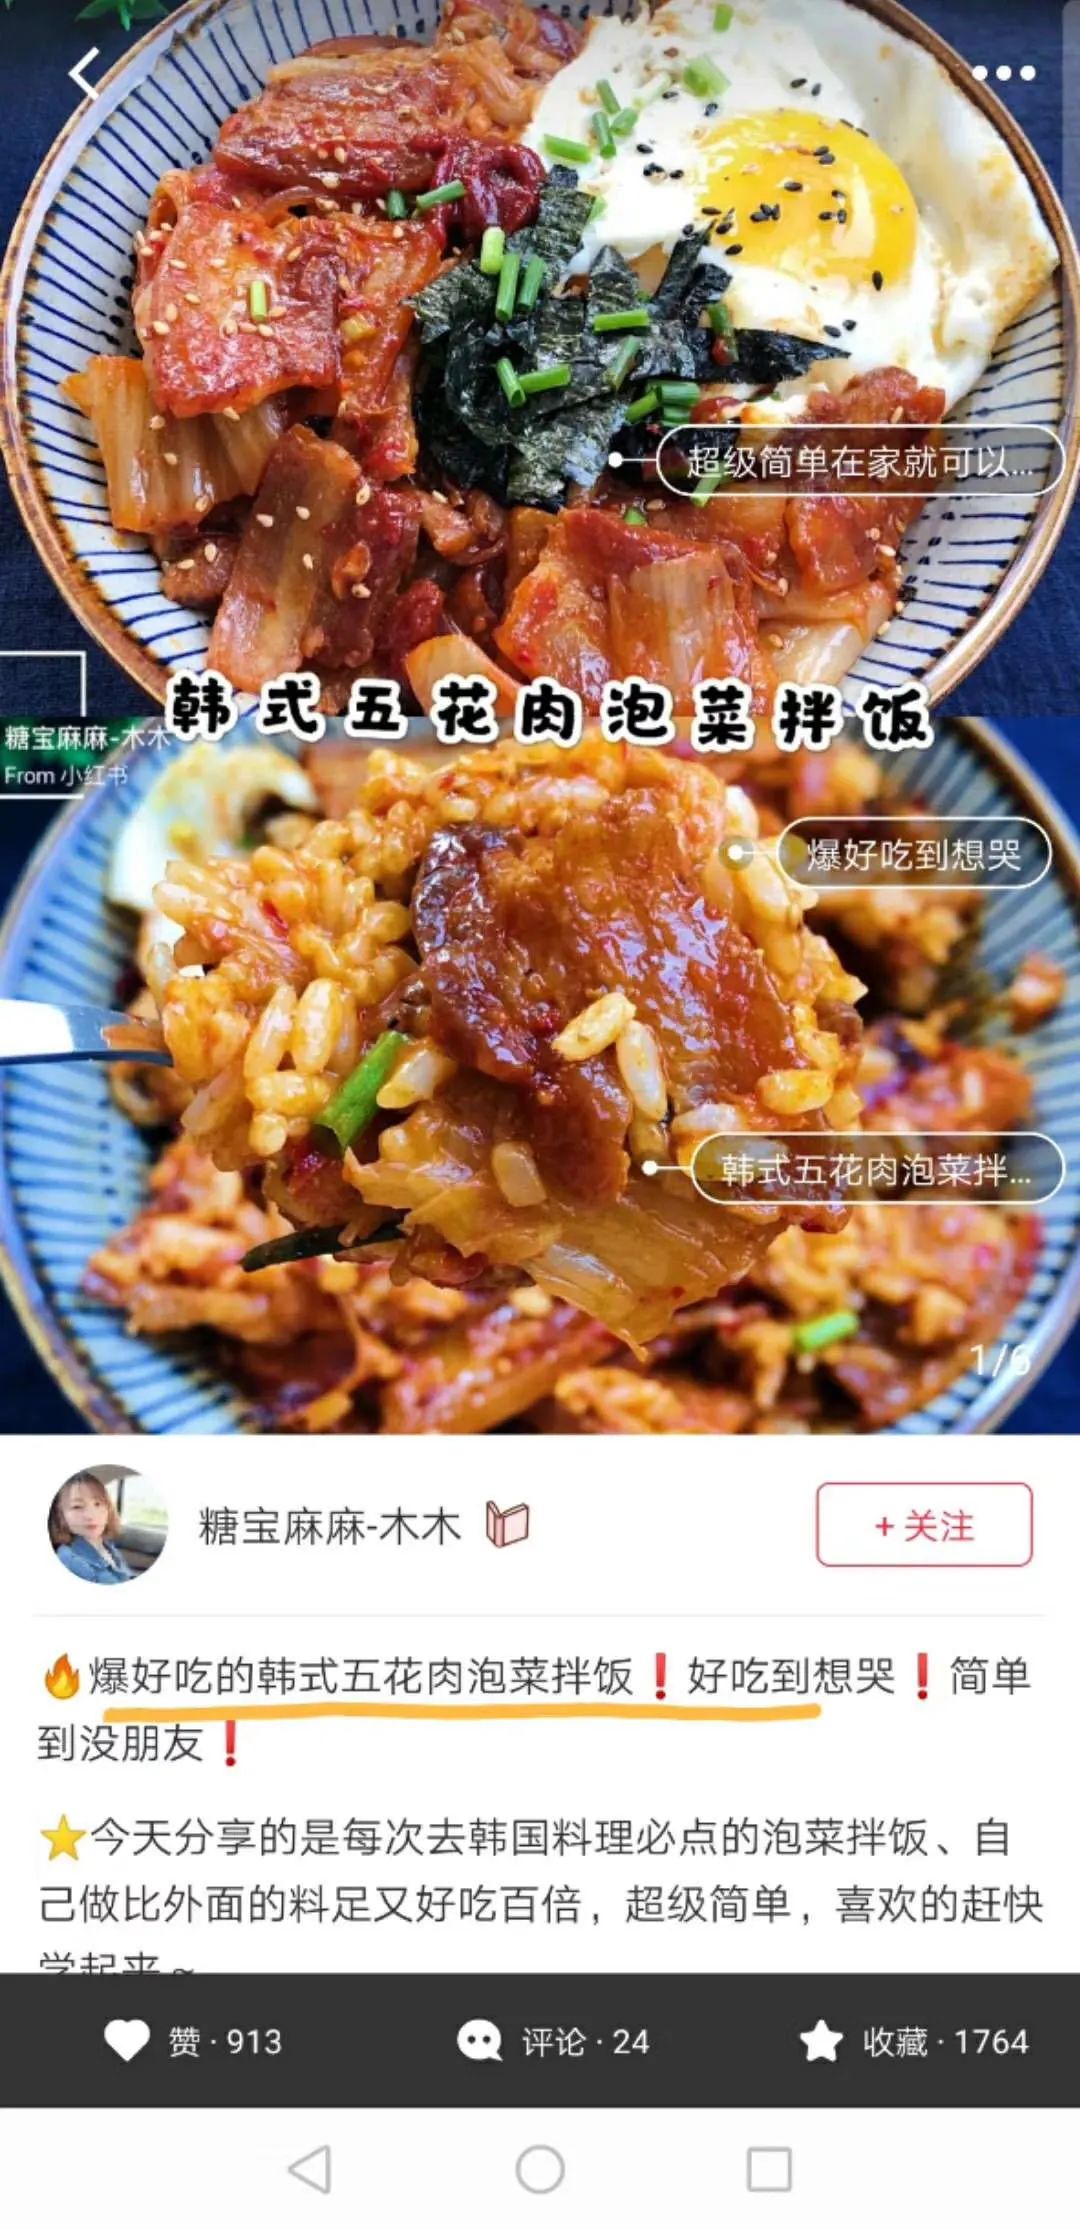 7.17团品鲜族老妈韩式辣白菜